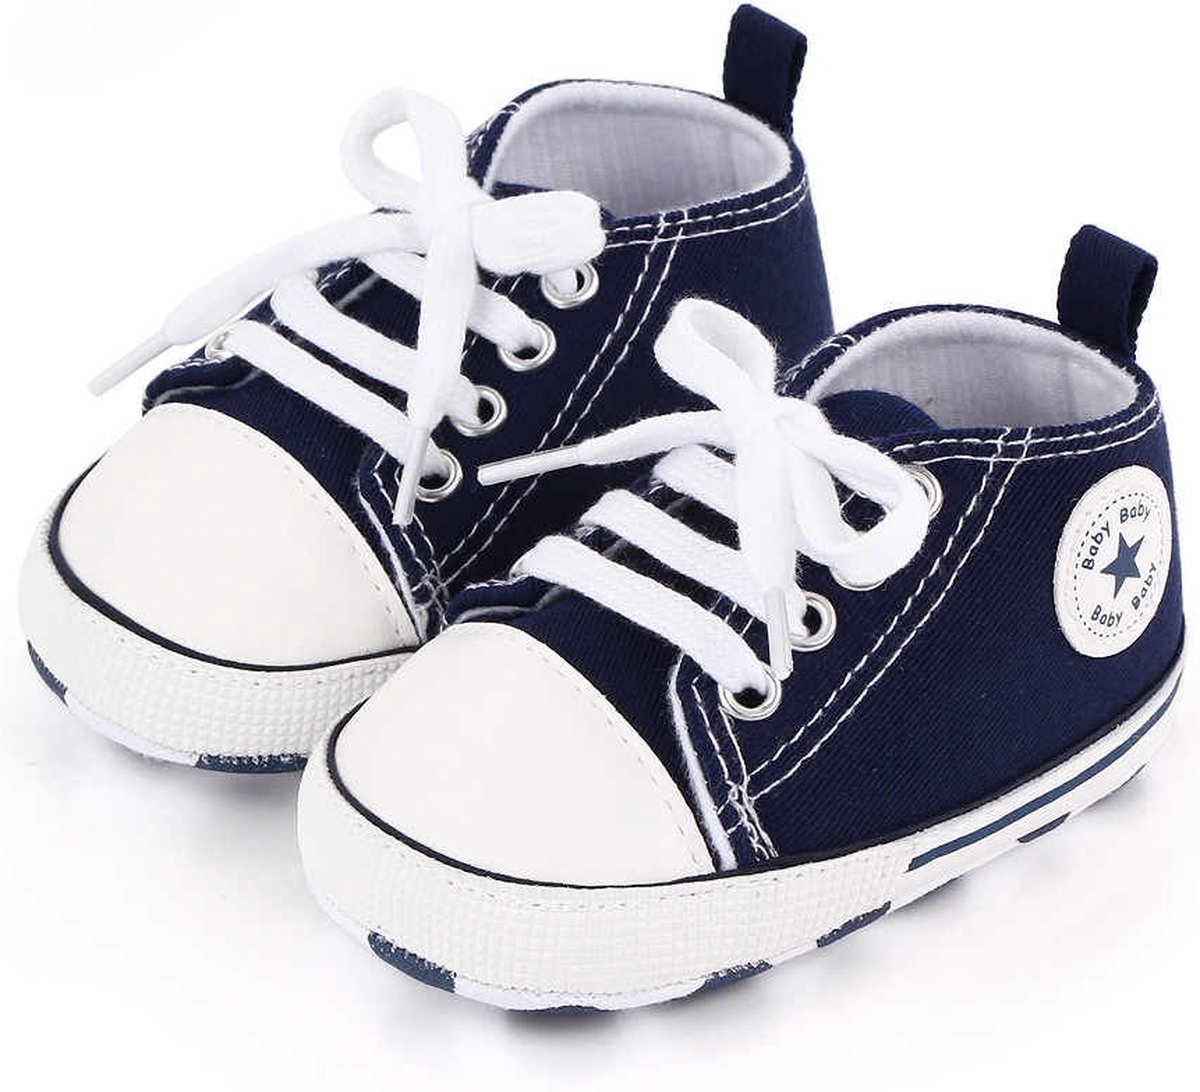 Baby Schoenen - Pasgeboren Babyschoenen - Meisjes/Jongens - Eerste Baby Schoentjes - 0-6 maanden - Maat 17 - Baby slofjes 11cm